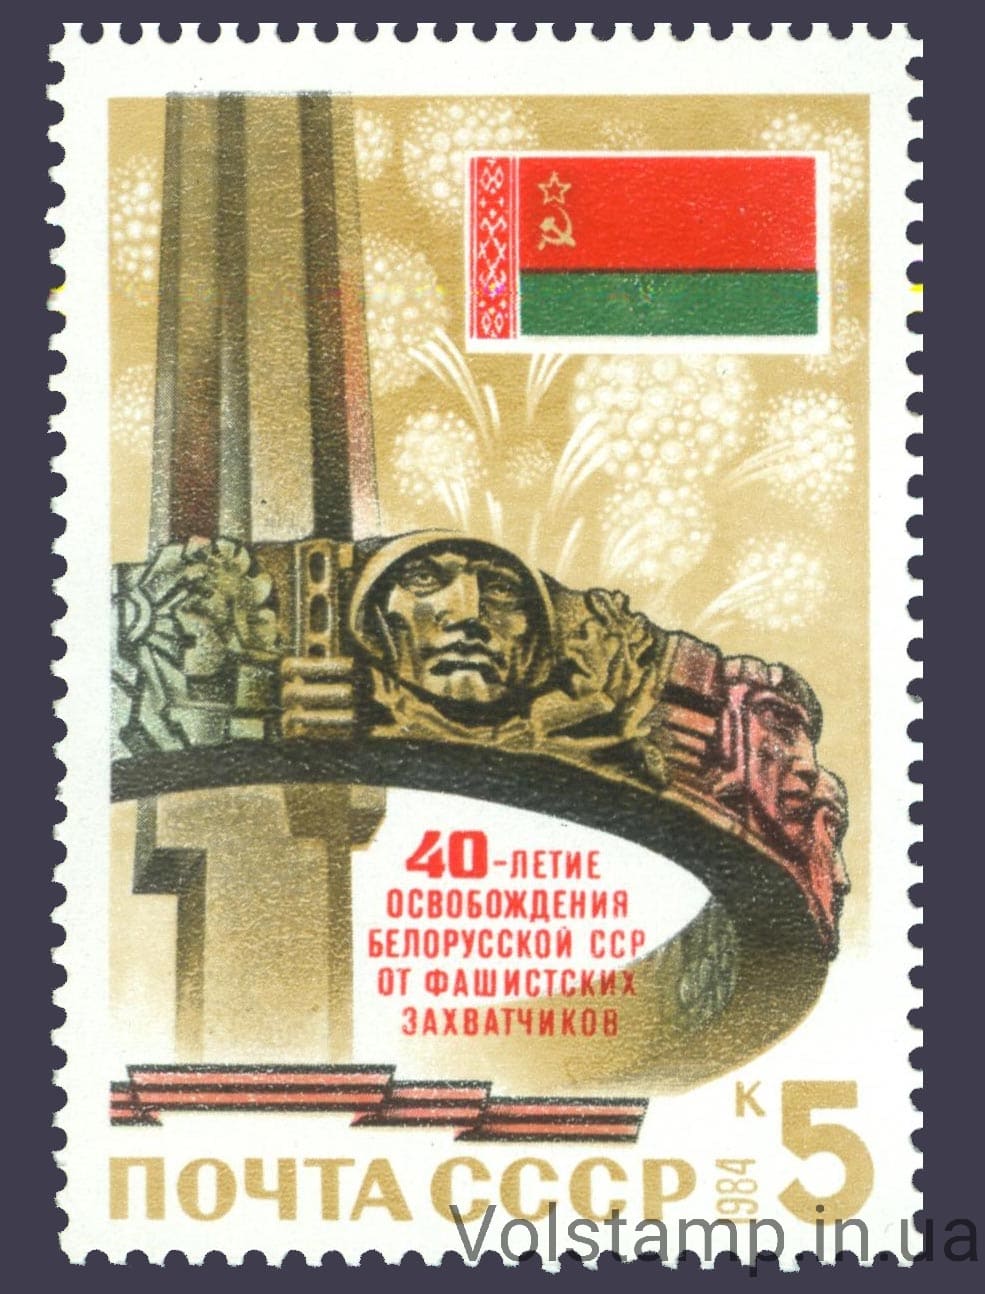 1984 марка 40 лет освобождению Белоруссии от немецко-фашистских захватчиков №5457